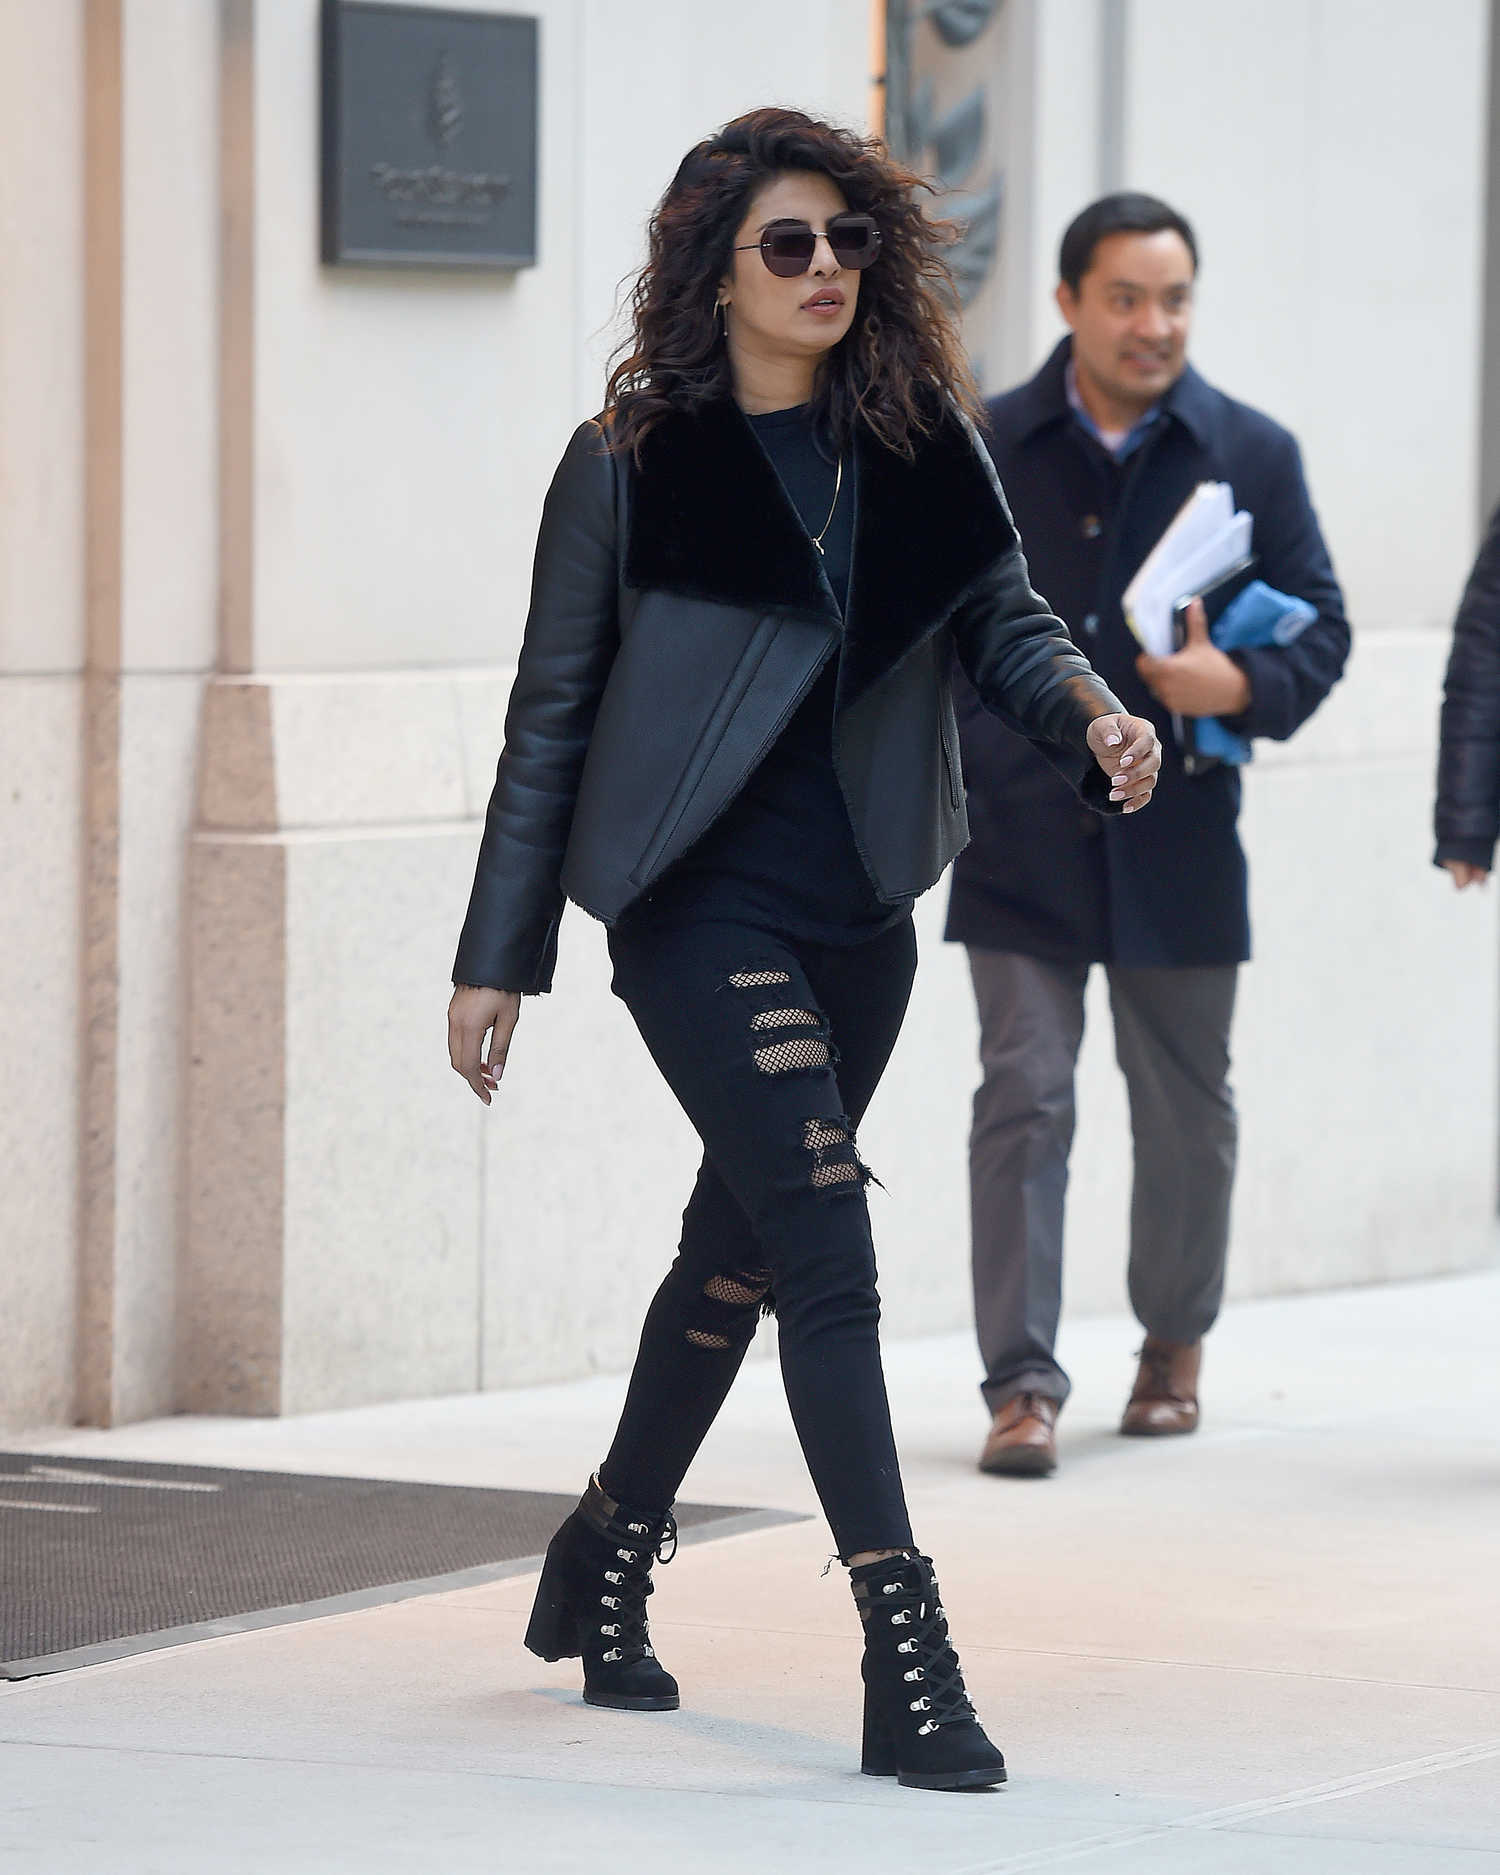 Priyanka Chopra Wears a Trendy Leather Jacket Out in NYC – Celeb Donut